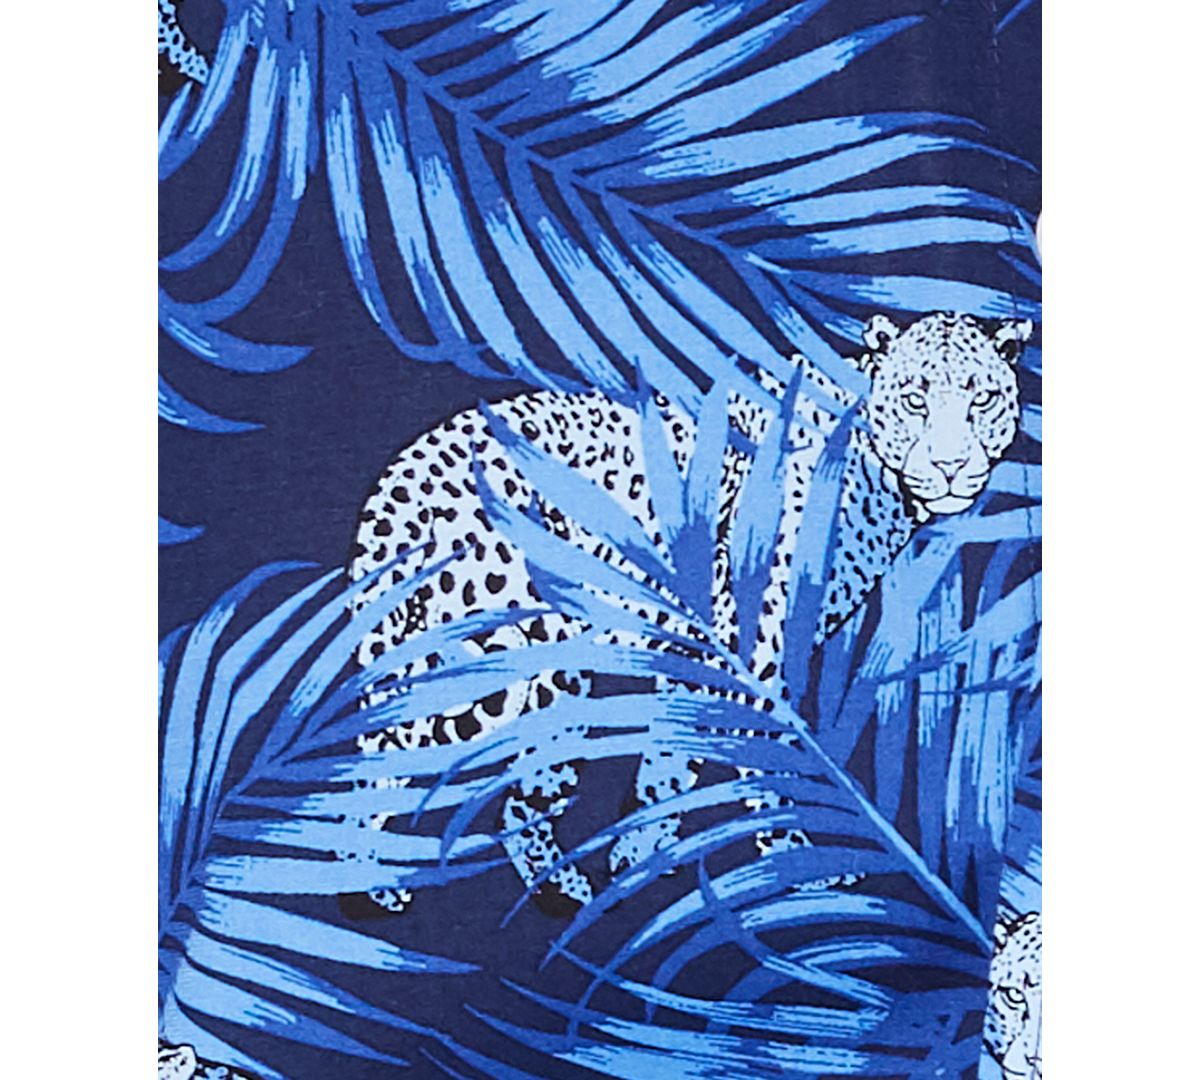 Club Room Stretch Cheetah-print Jungle Shirt Navy Blue